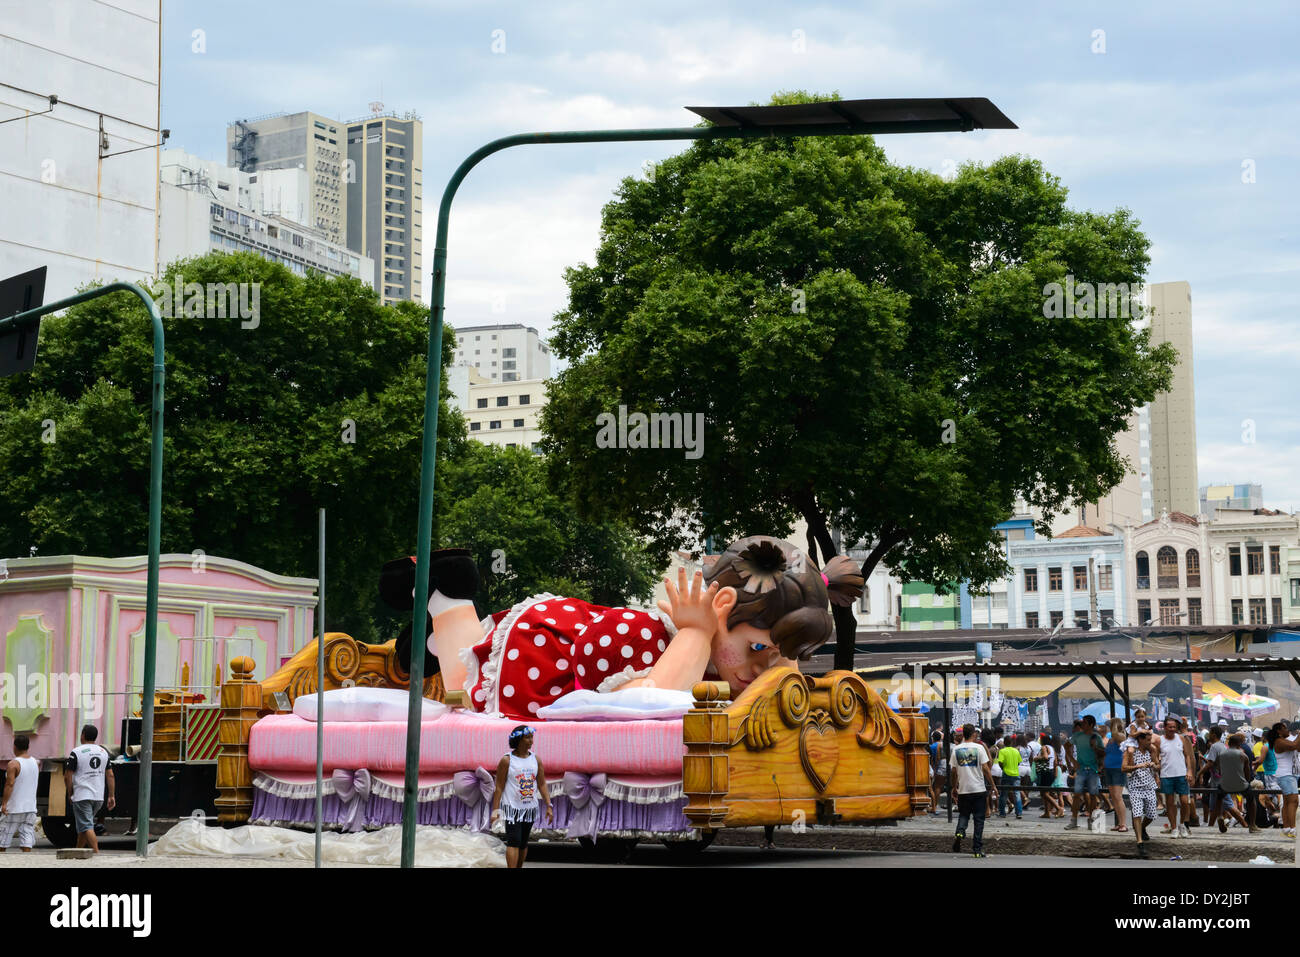 Karneval-Float von Mädchen in rot gepunkteten Kleid auf Bett, Parken auf der Straße, Rio De Janeiro Stockfoto